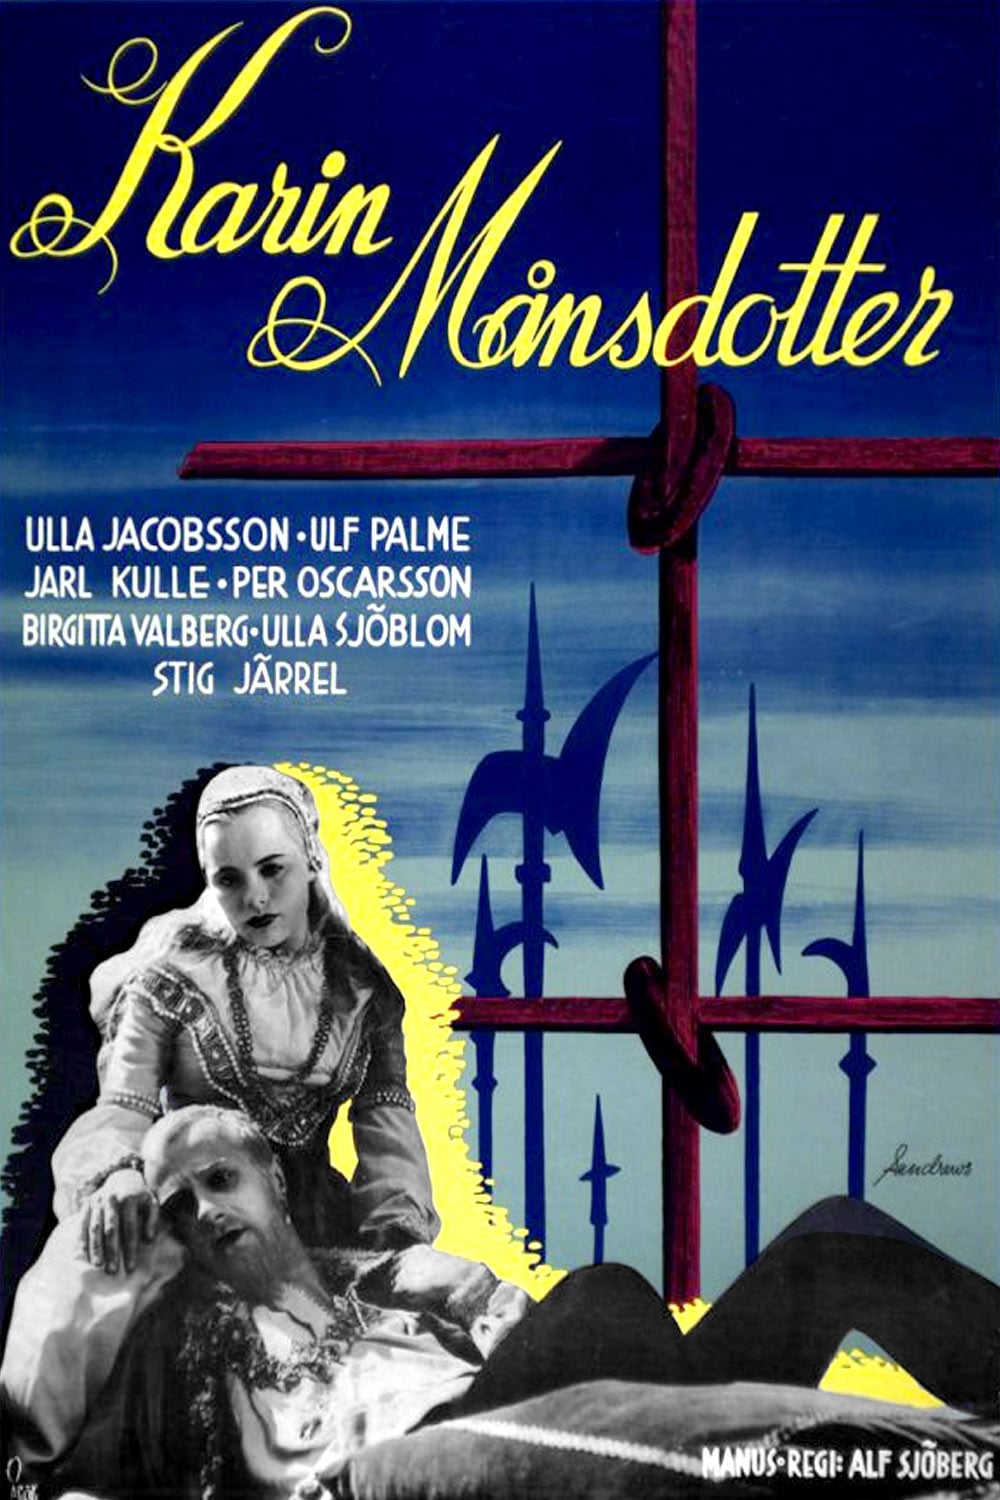 Karin Månsdotter film